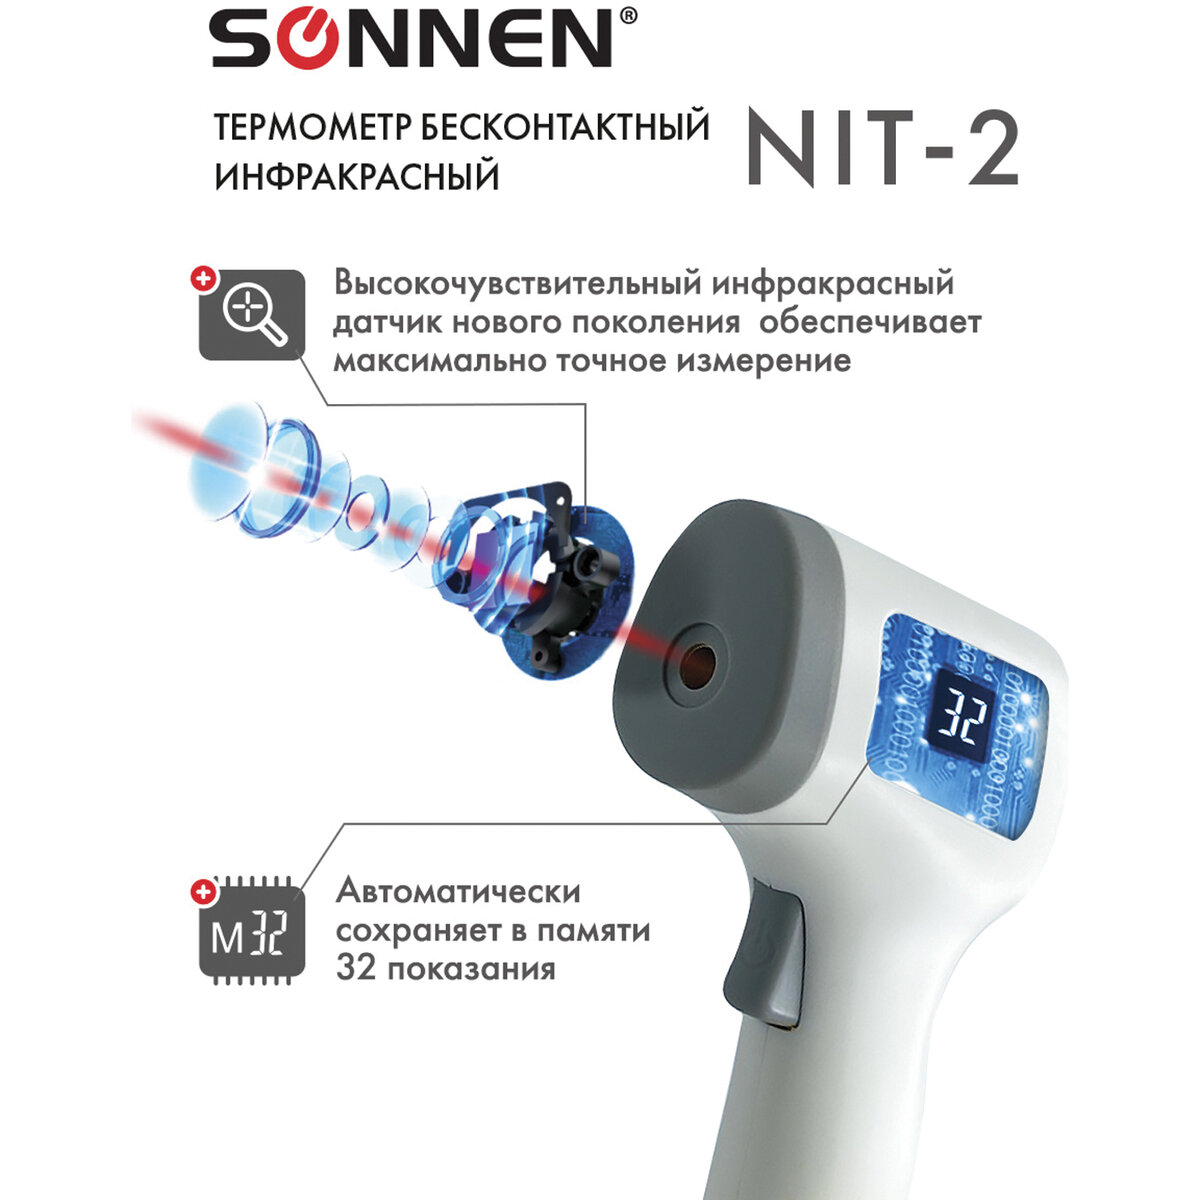 Термометр Sonnen бесконтактный инфракрасный NIT-2 GP-300 электронный - фото 7